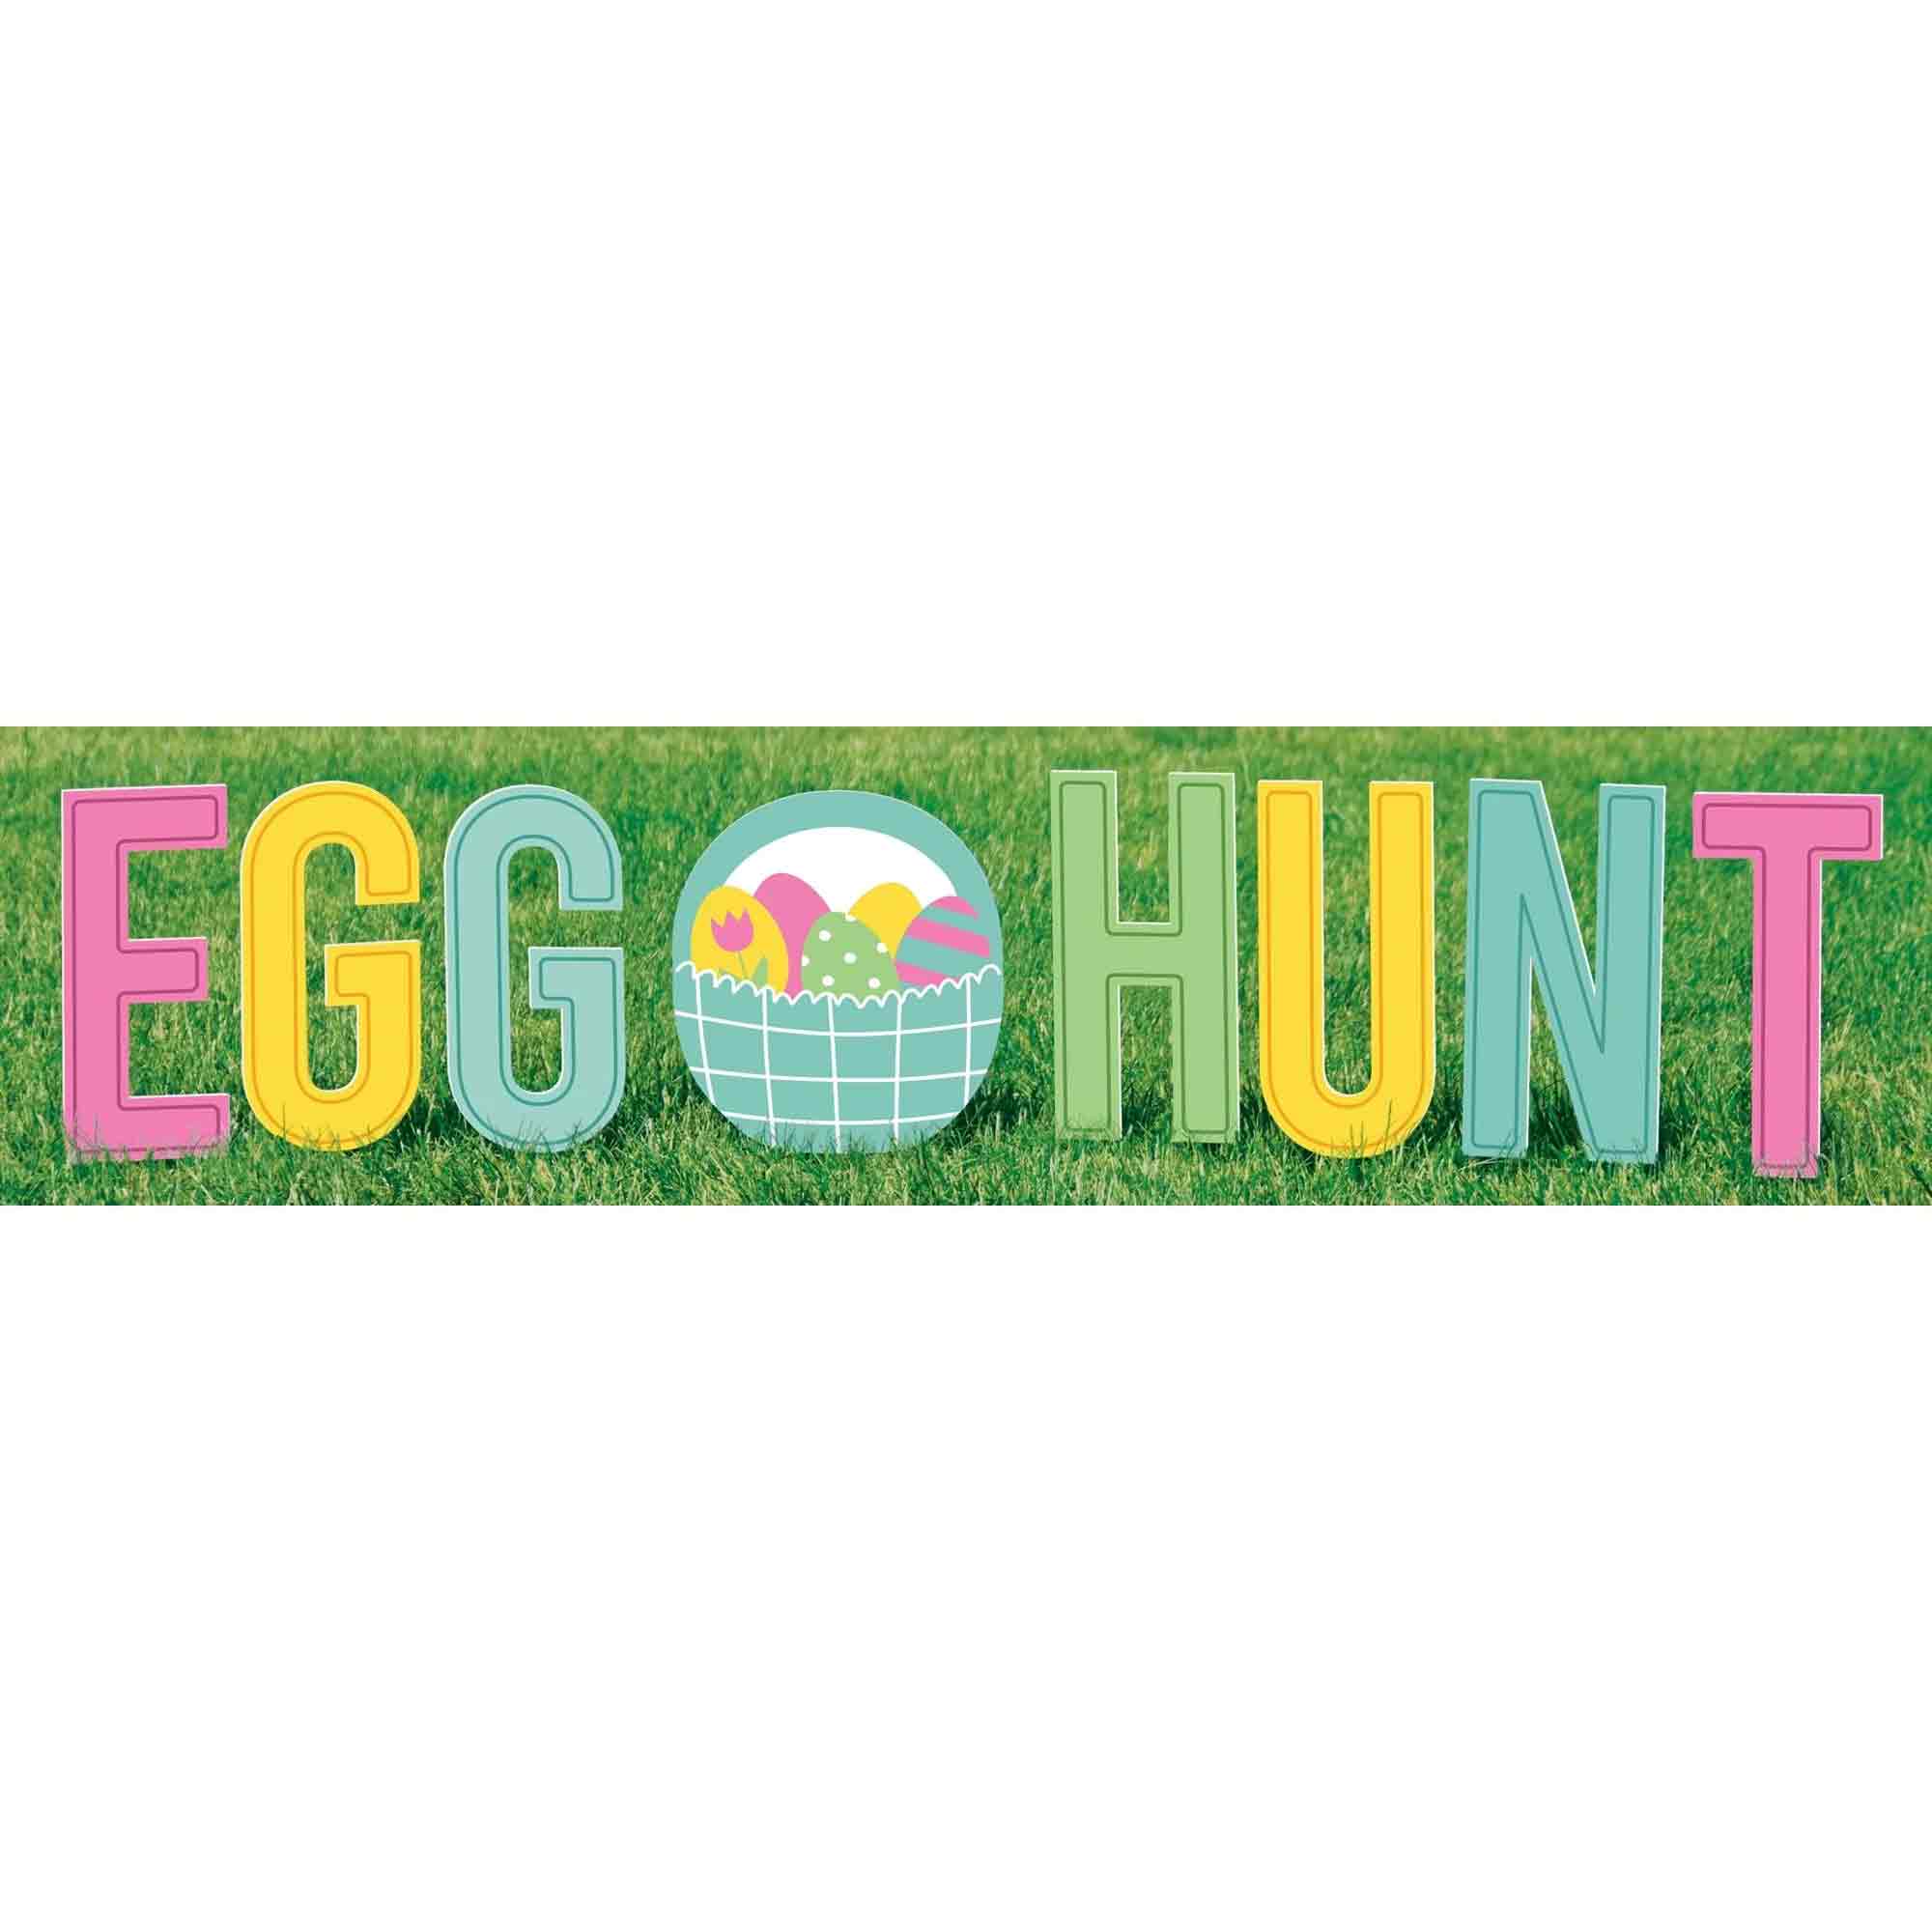 Egg Hunt Yard Signs Corrugated Plastic, 9pcs